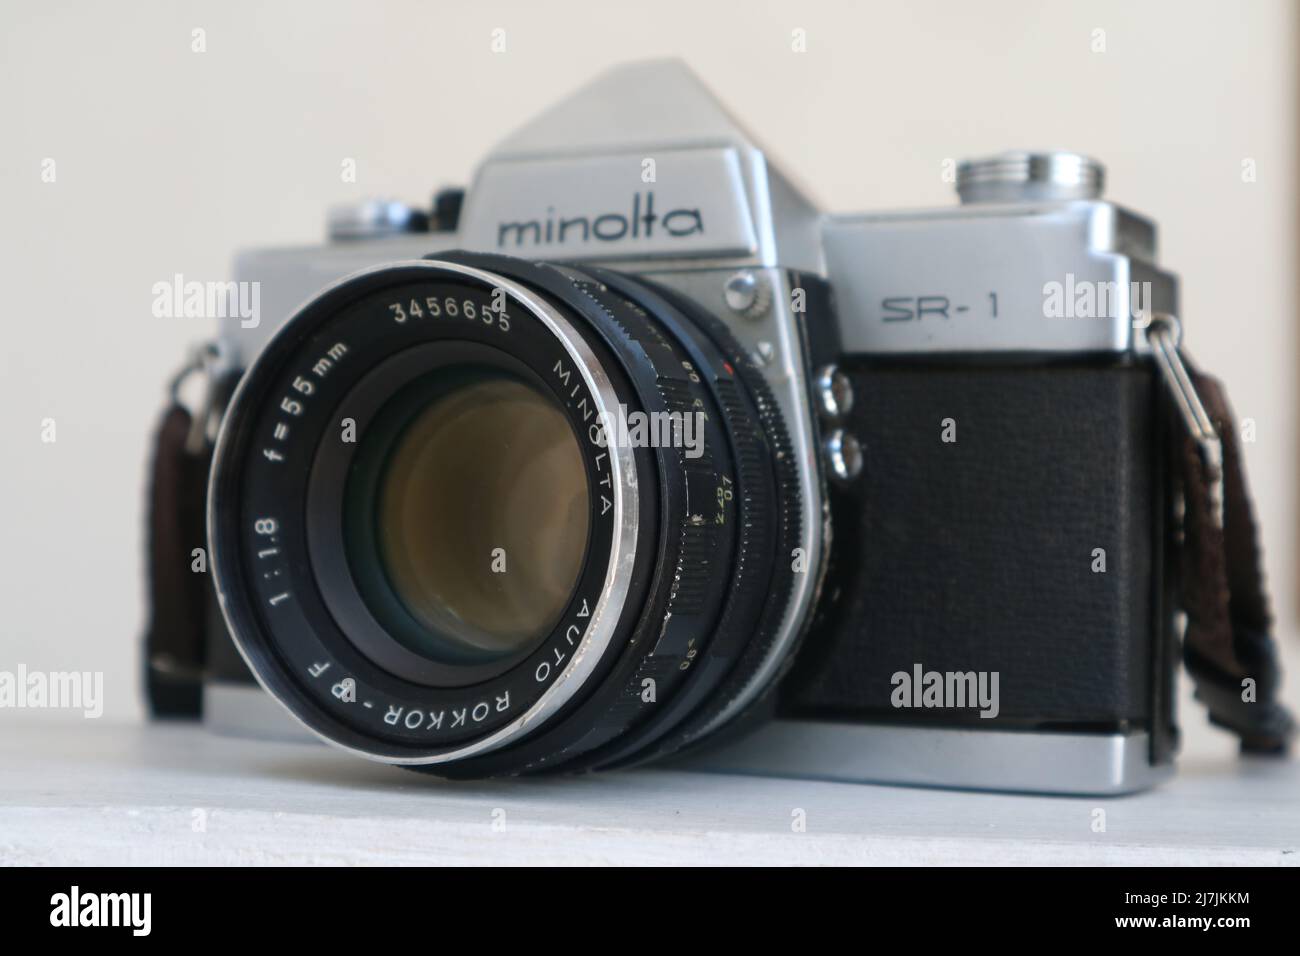 SIDOARJO, INDONÉSIE - 05 mai 2022 : Minolta SR-1 avec MC Rokkor-PF 1:1,4 f=58mm caméra de cinéma analogique vintage 35mm, lancée en 1966. Banque D'Images